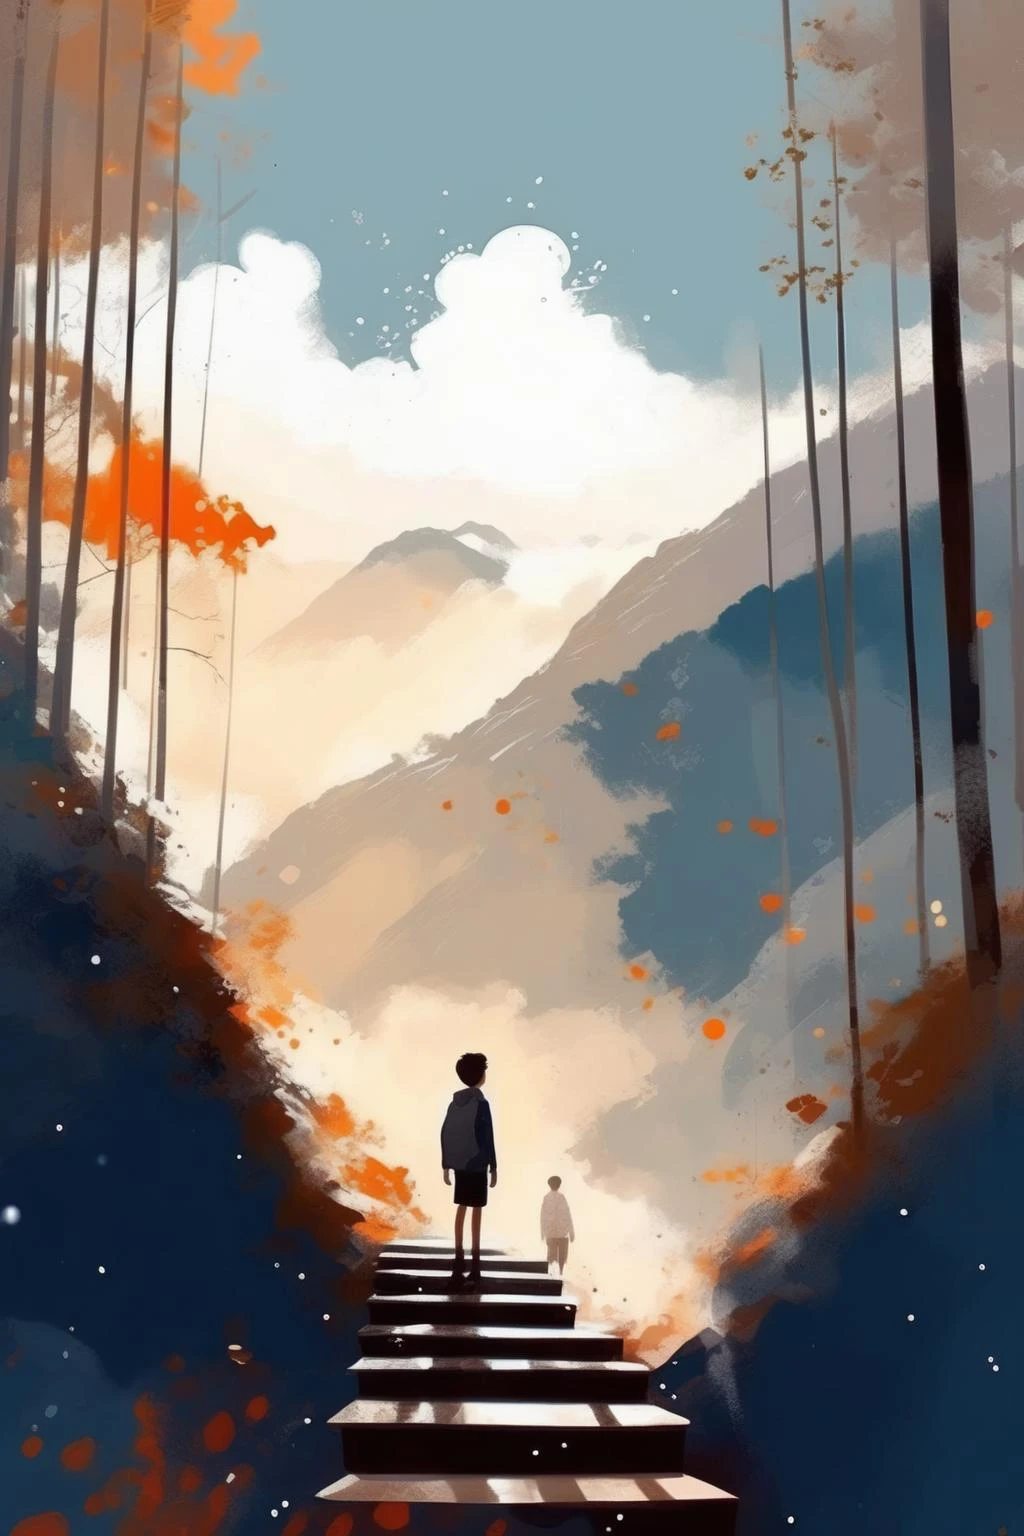 帕斯卡·坎皮恩风格 — 一个男孩站在山上的长楼梯上,树木,天空, 雲